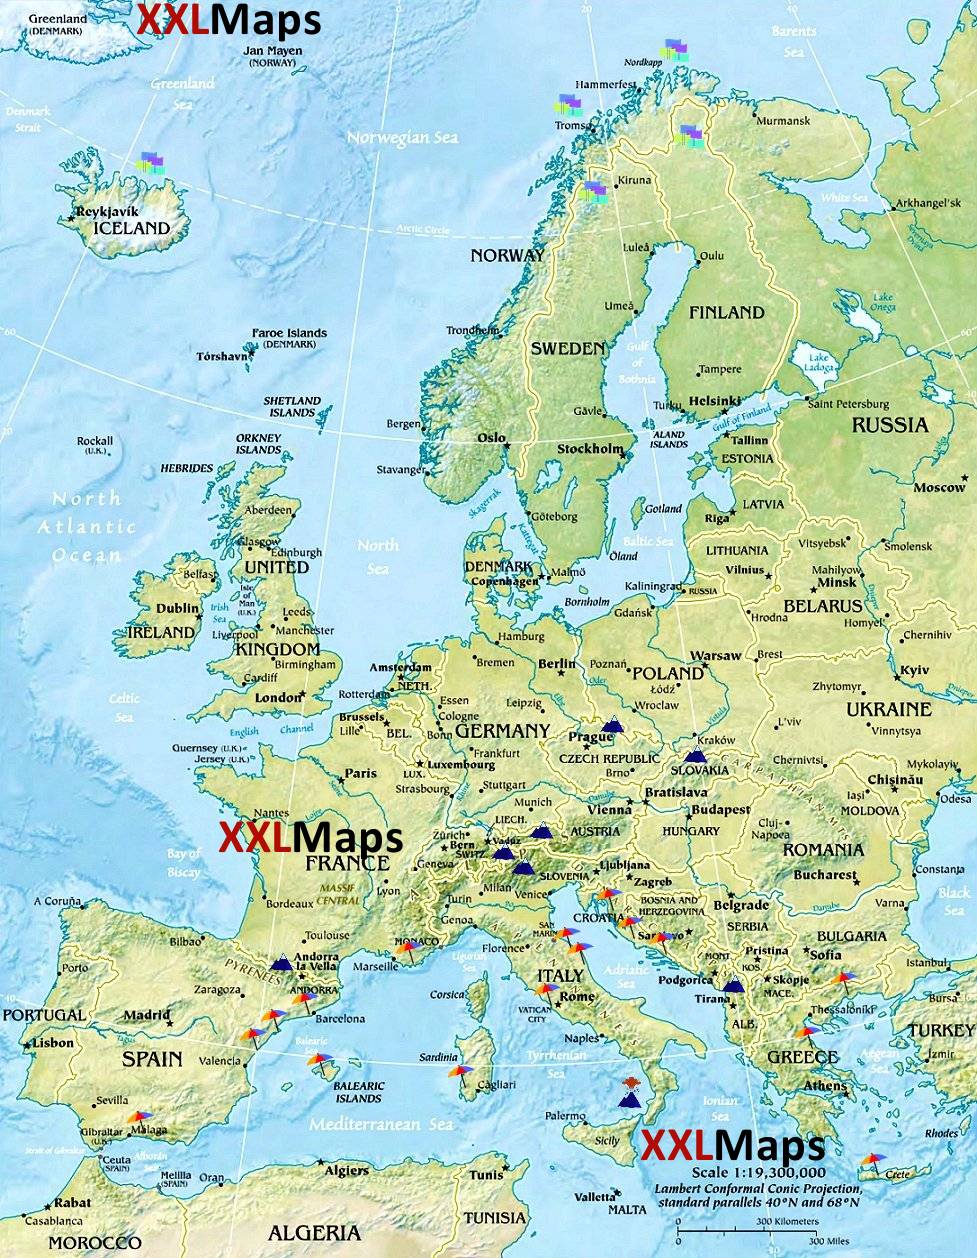 Mappa fisica di Europa